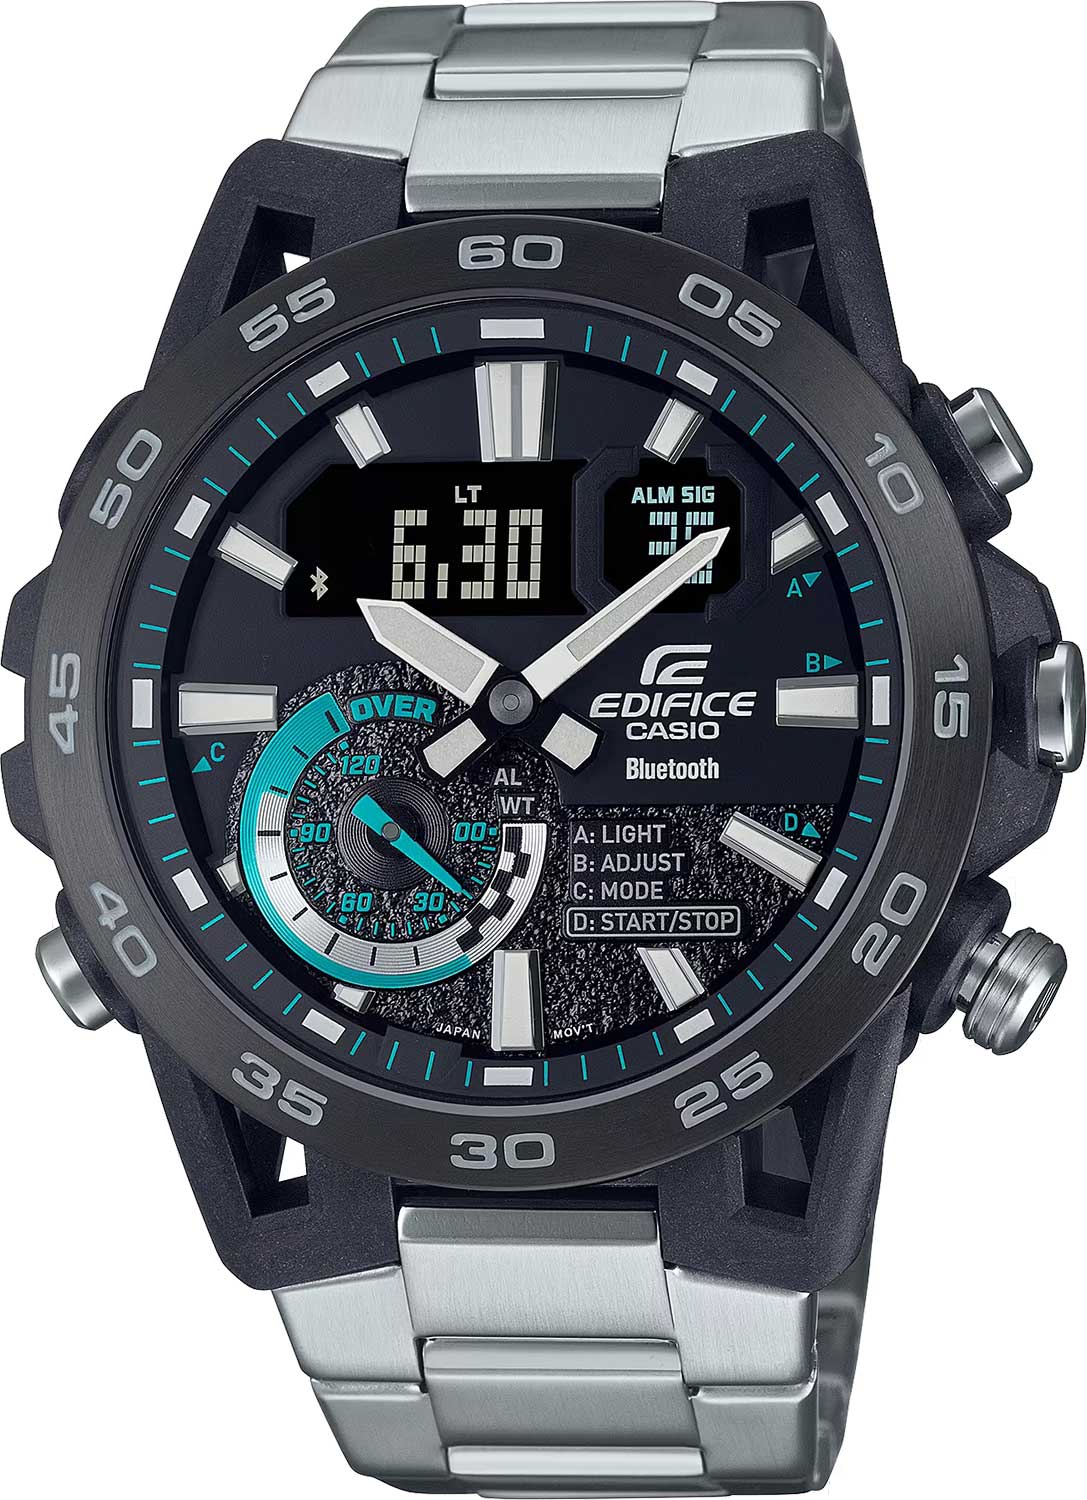 Наручные часы Casio Edifice ECB-40DB-1A — купить в интернет-магазине AllTime.ru по лучшей цене, фото, характеристики, инструкция, описание